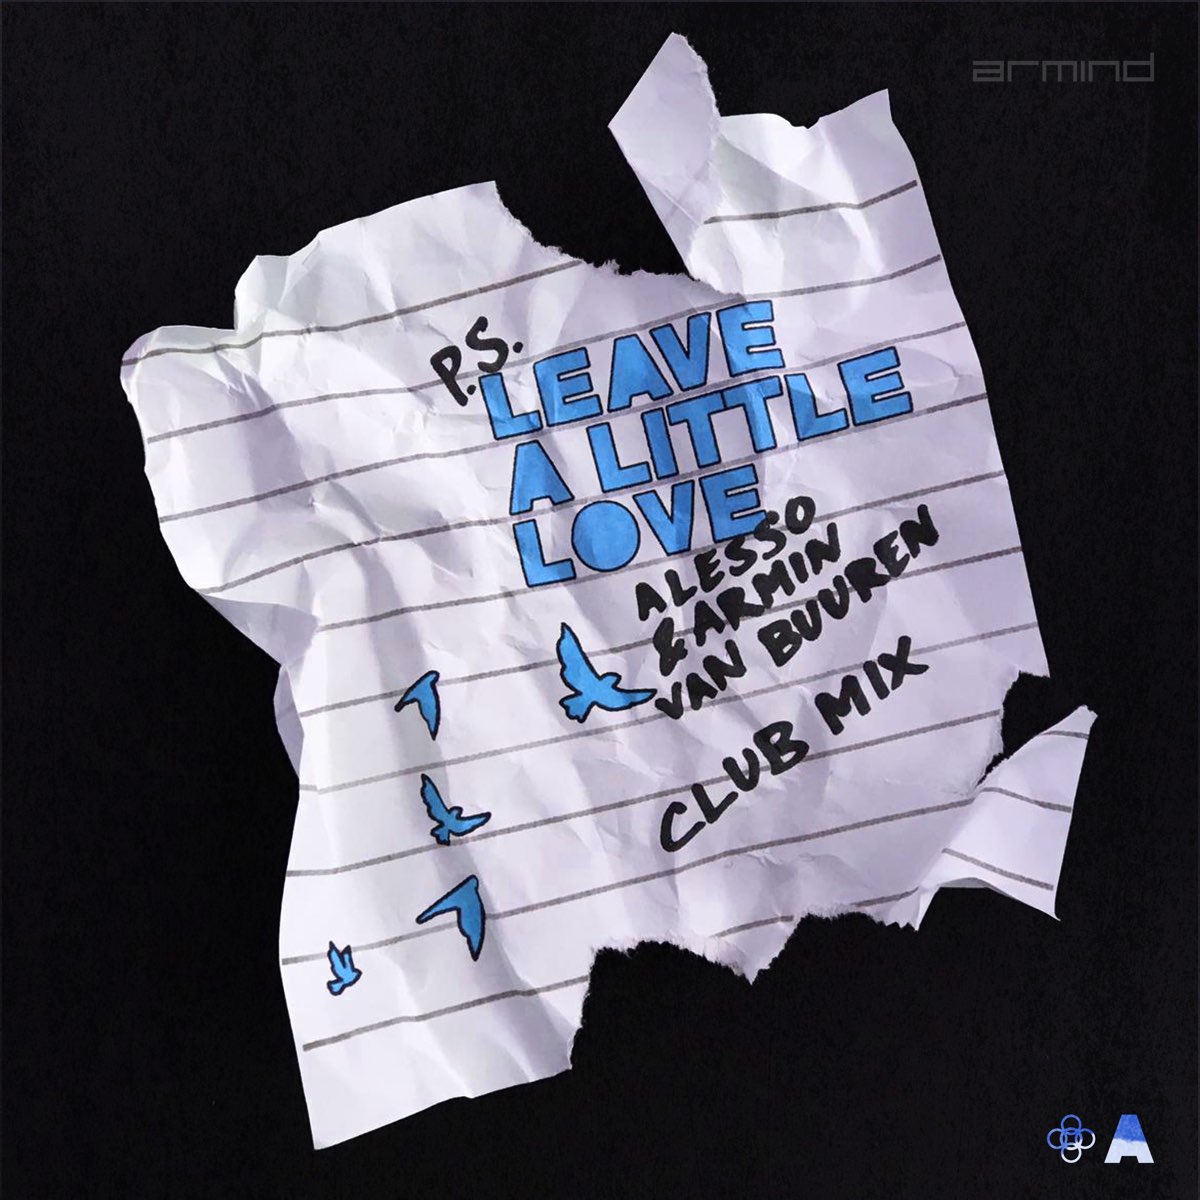 Alesso & Armin van Buuren – Leave a Little Love (Club Mix)